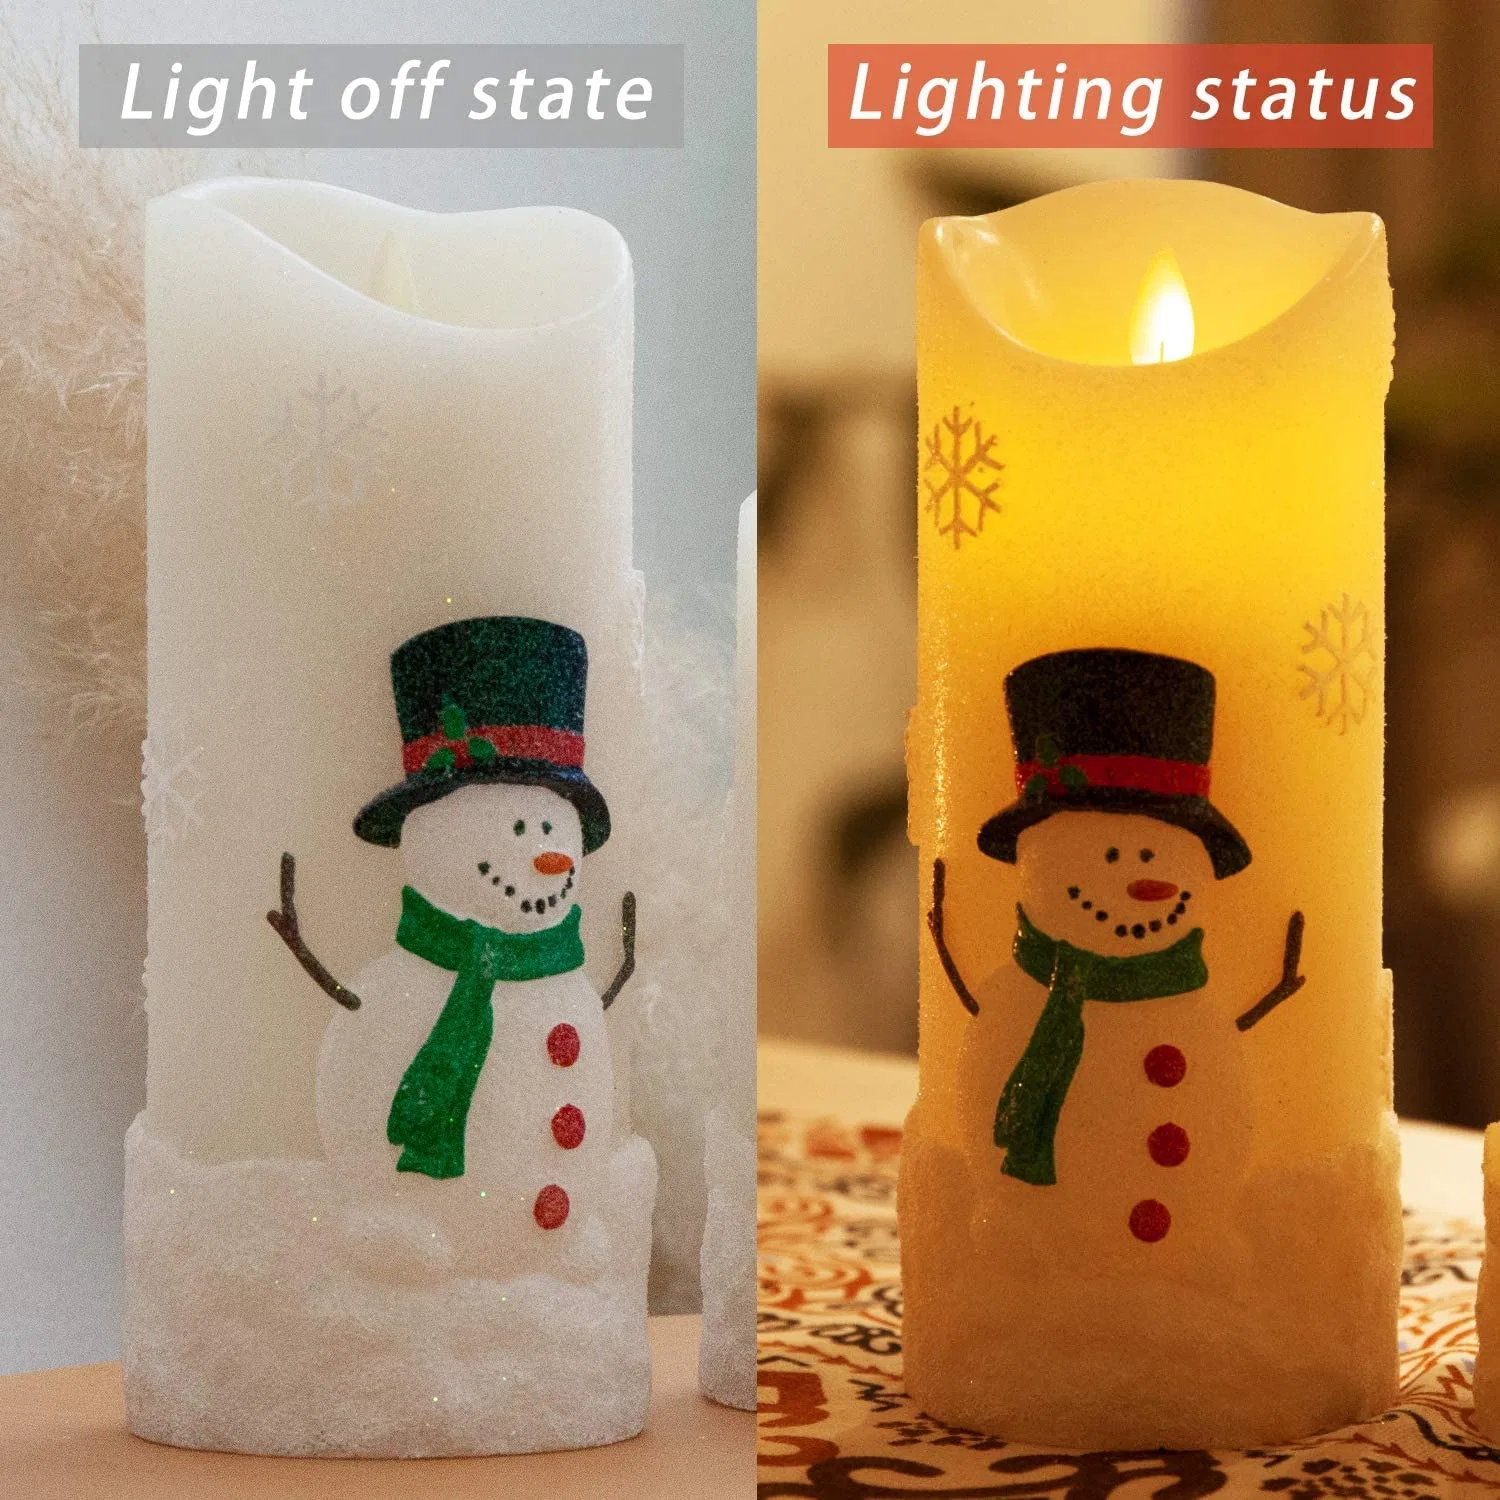 المؤقّ البعيد التأثير المتحرك يومض مصباح LED الخاص بعمود سنومان بدون شموع لزينة عيد الميلاد